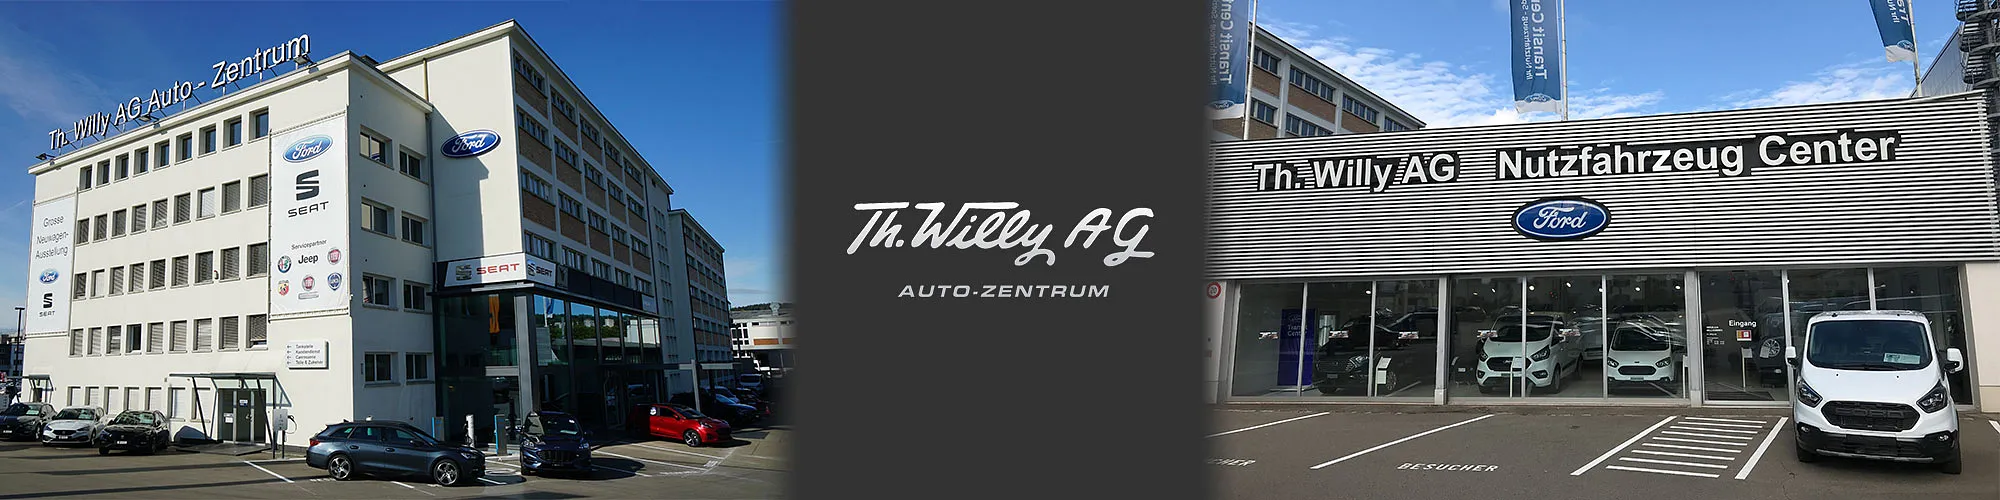 Th. Willy AG Auto-Zentrum Standort Schlieren